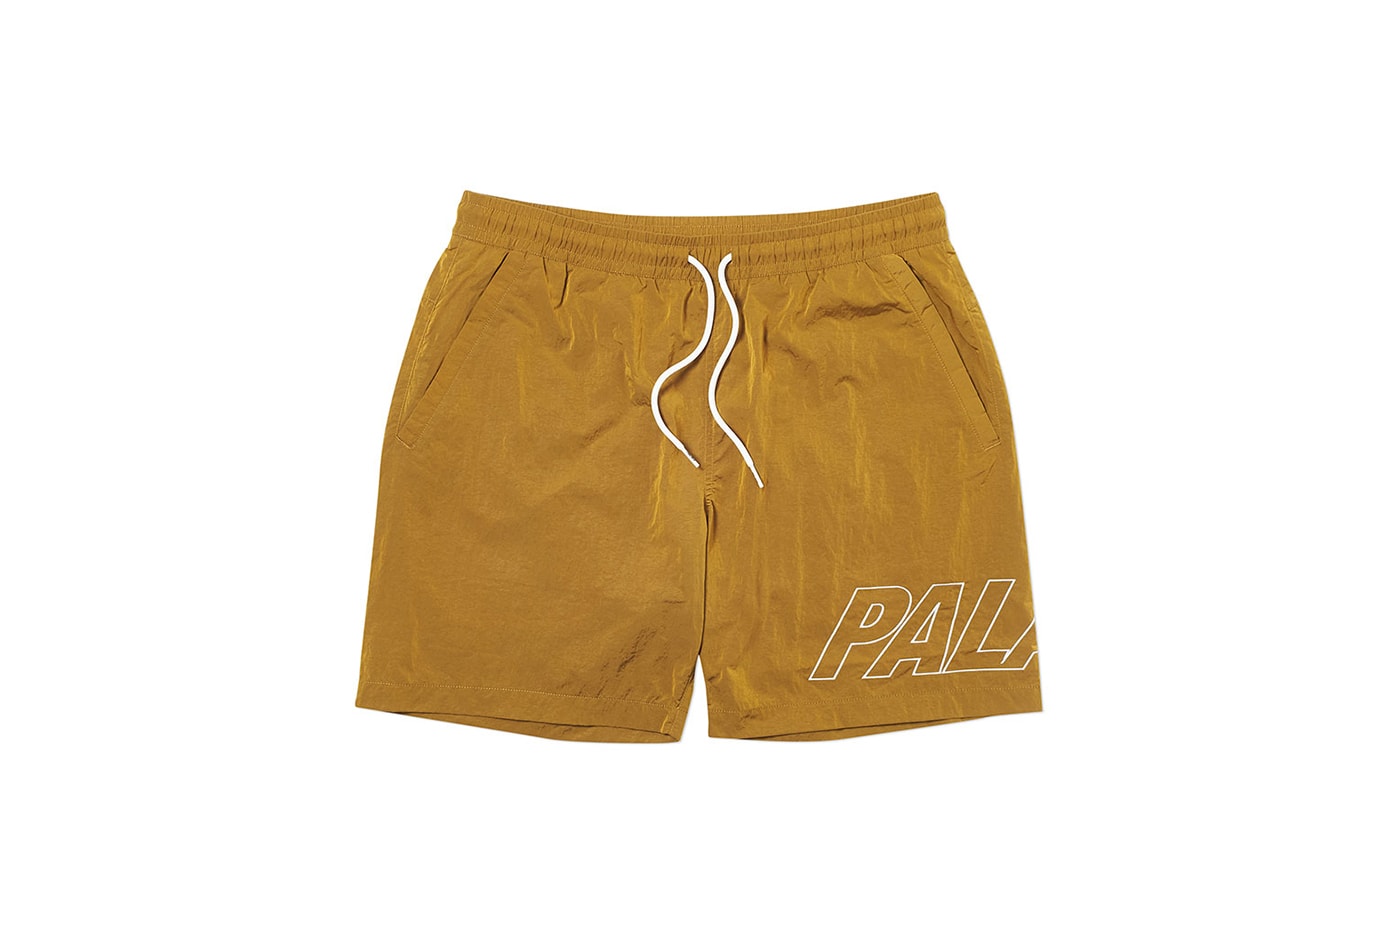 Palace 2019 夏季褲裝系列一覽